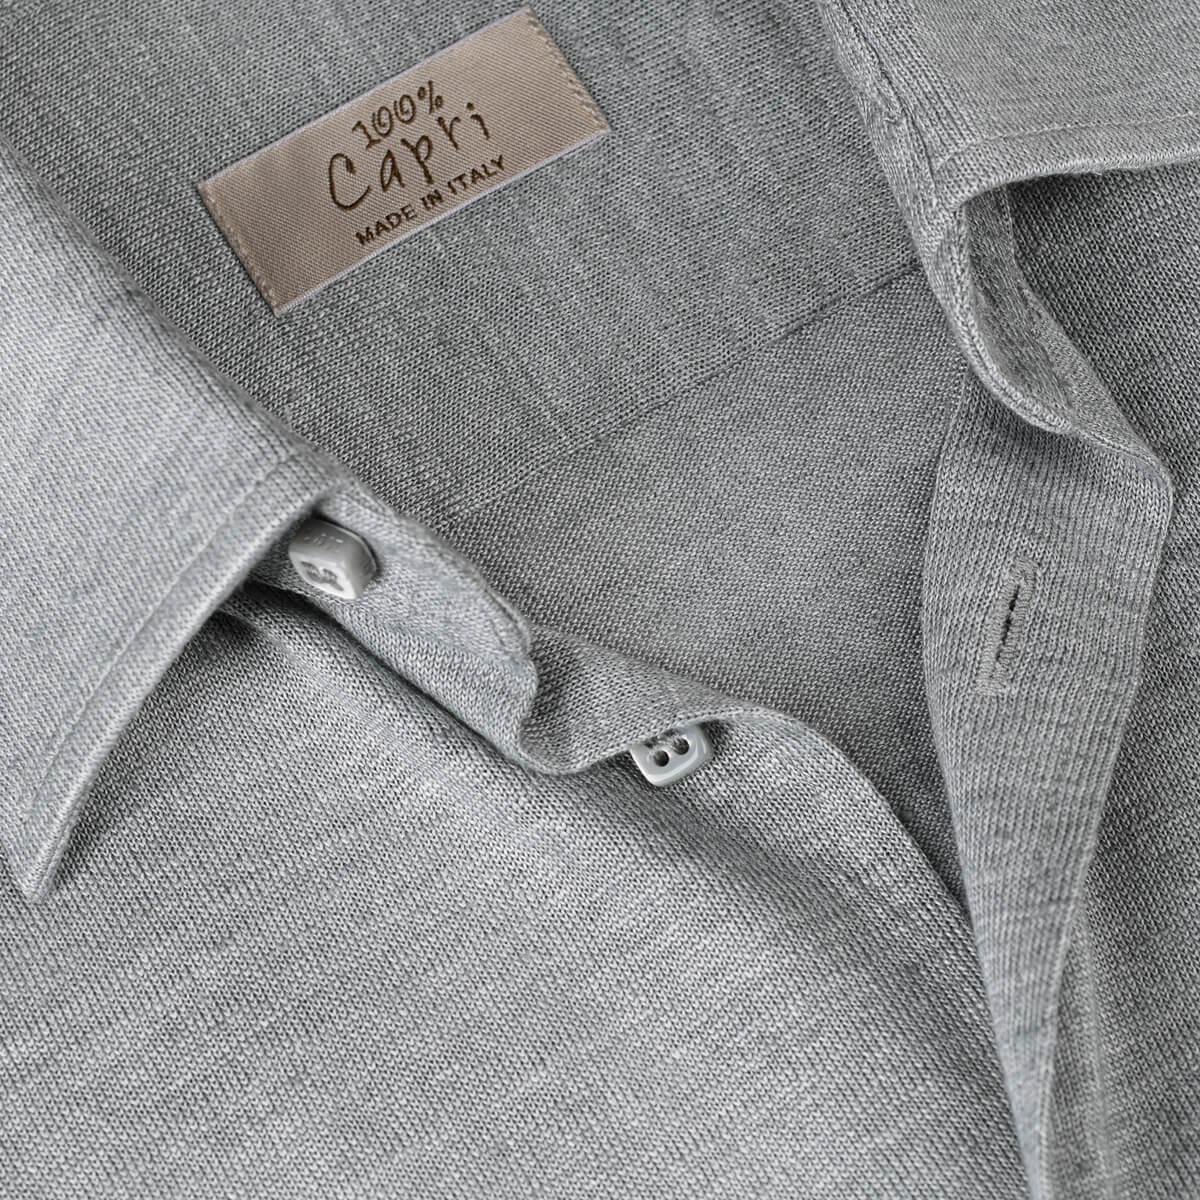 Camicia Short Sleeve light grey details 100% Capri